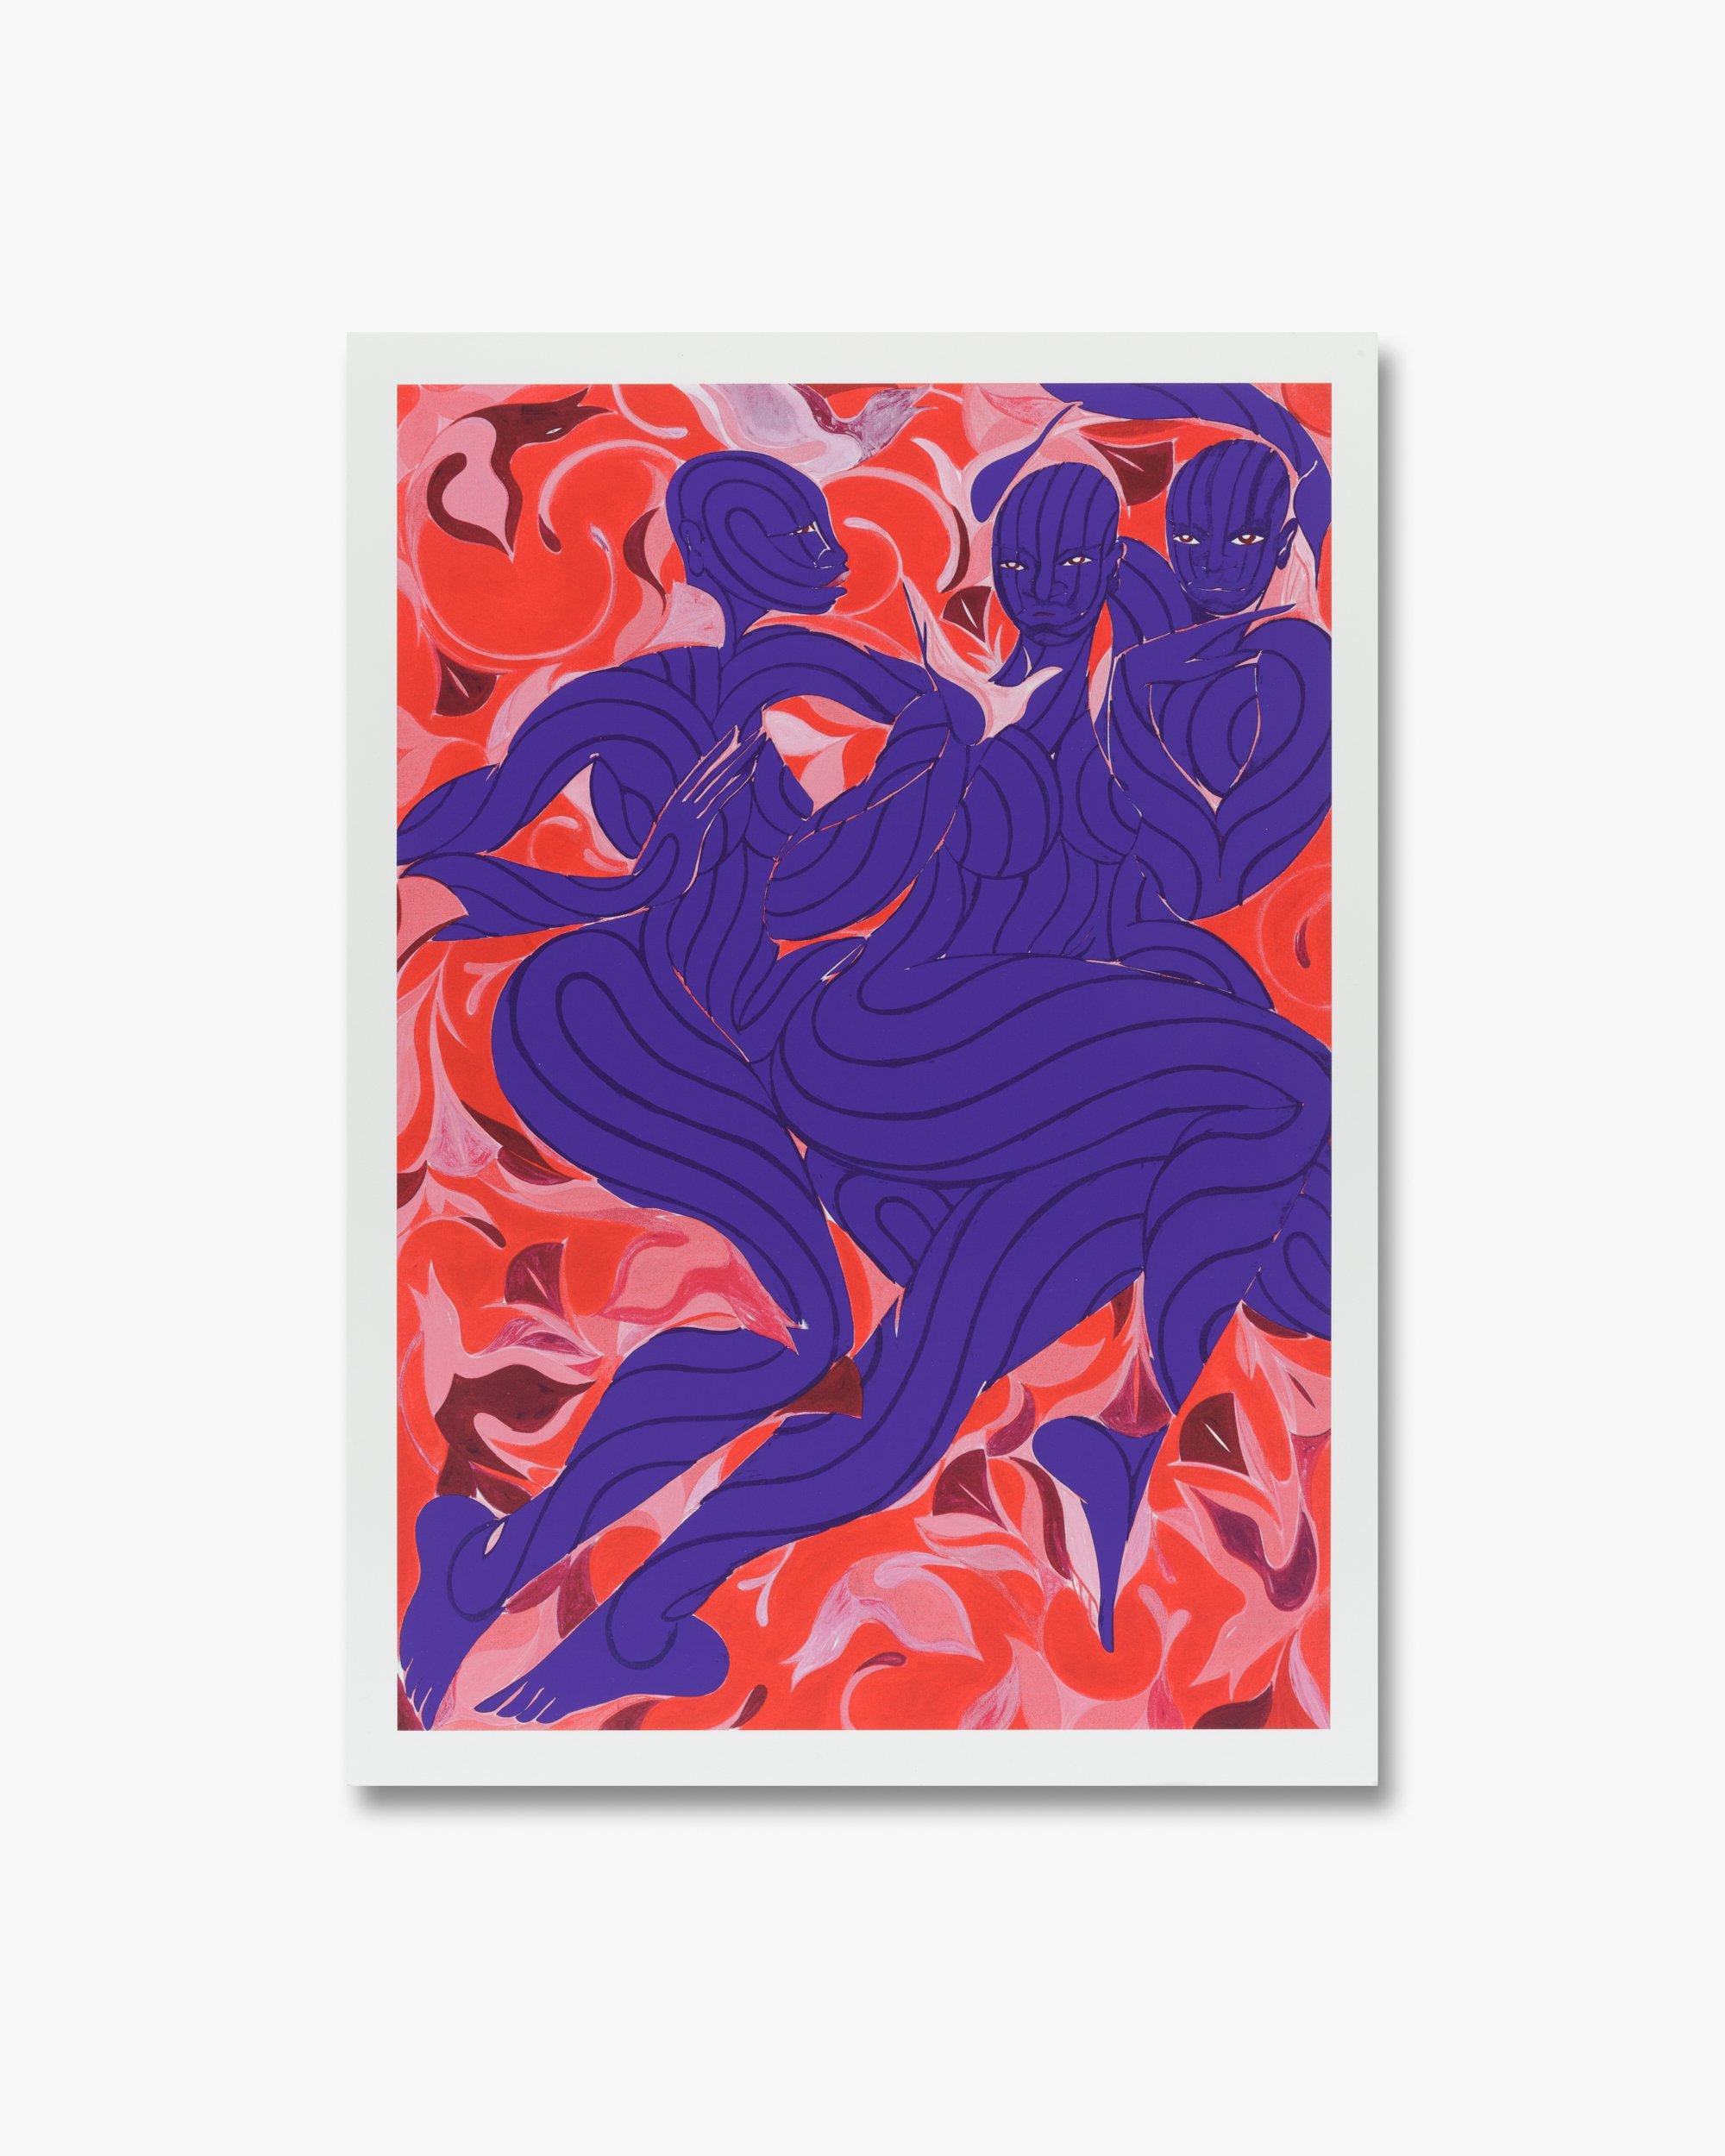 Tunji Adeniyi-Jones Figurative Print – Signierter und nummerierter Siebdruck „Violet Dance“